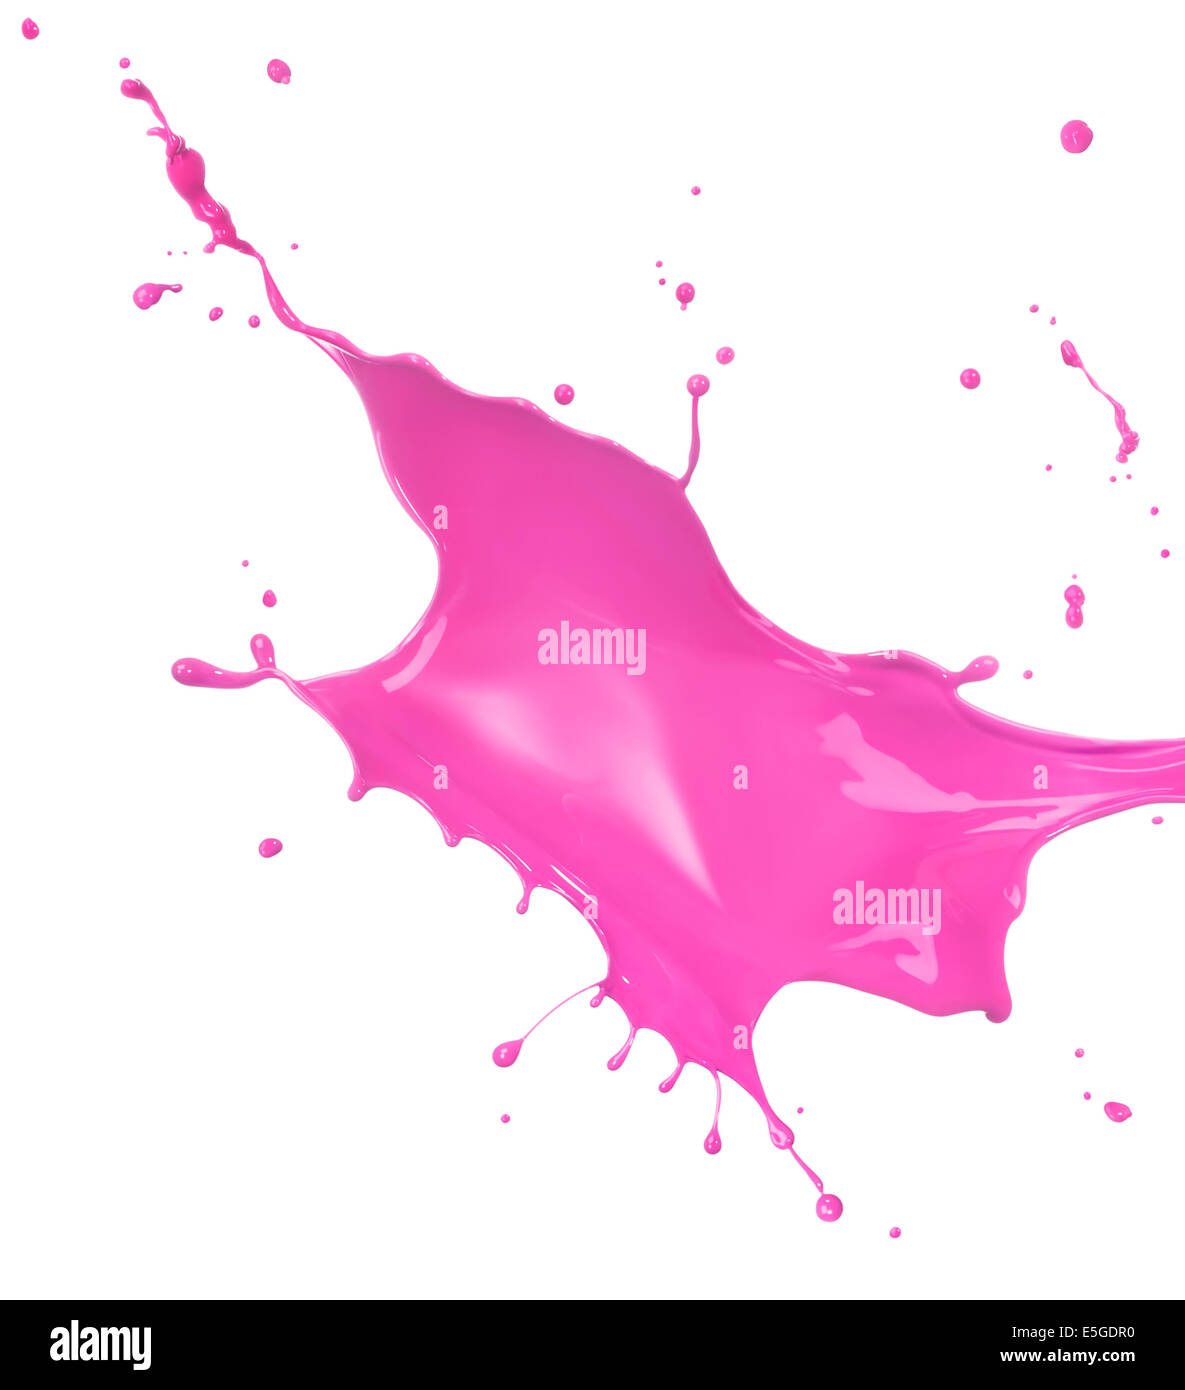 pink paint splash isolated on white background Stock Photo